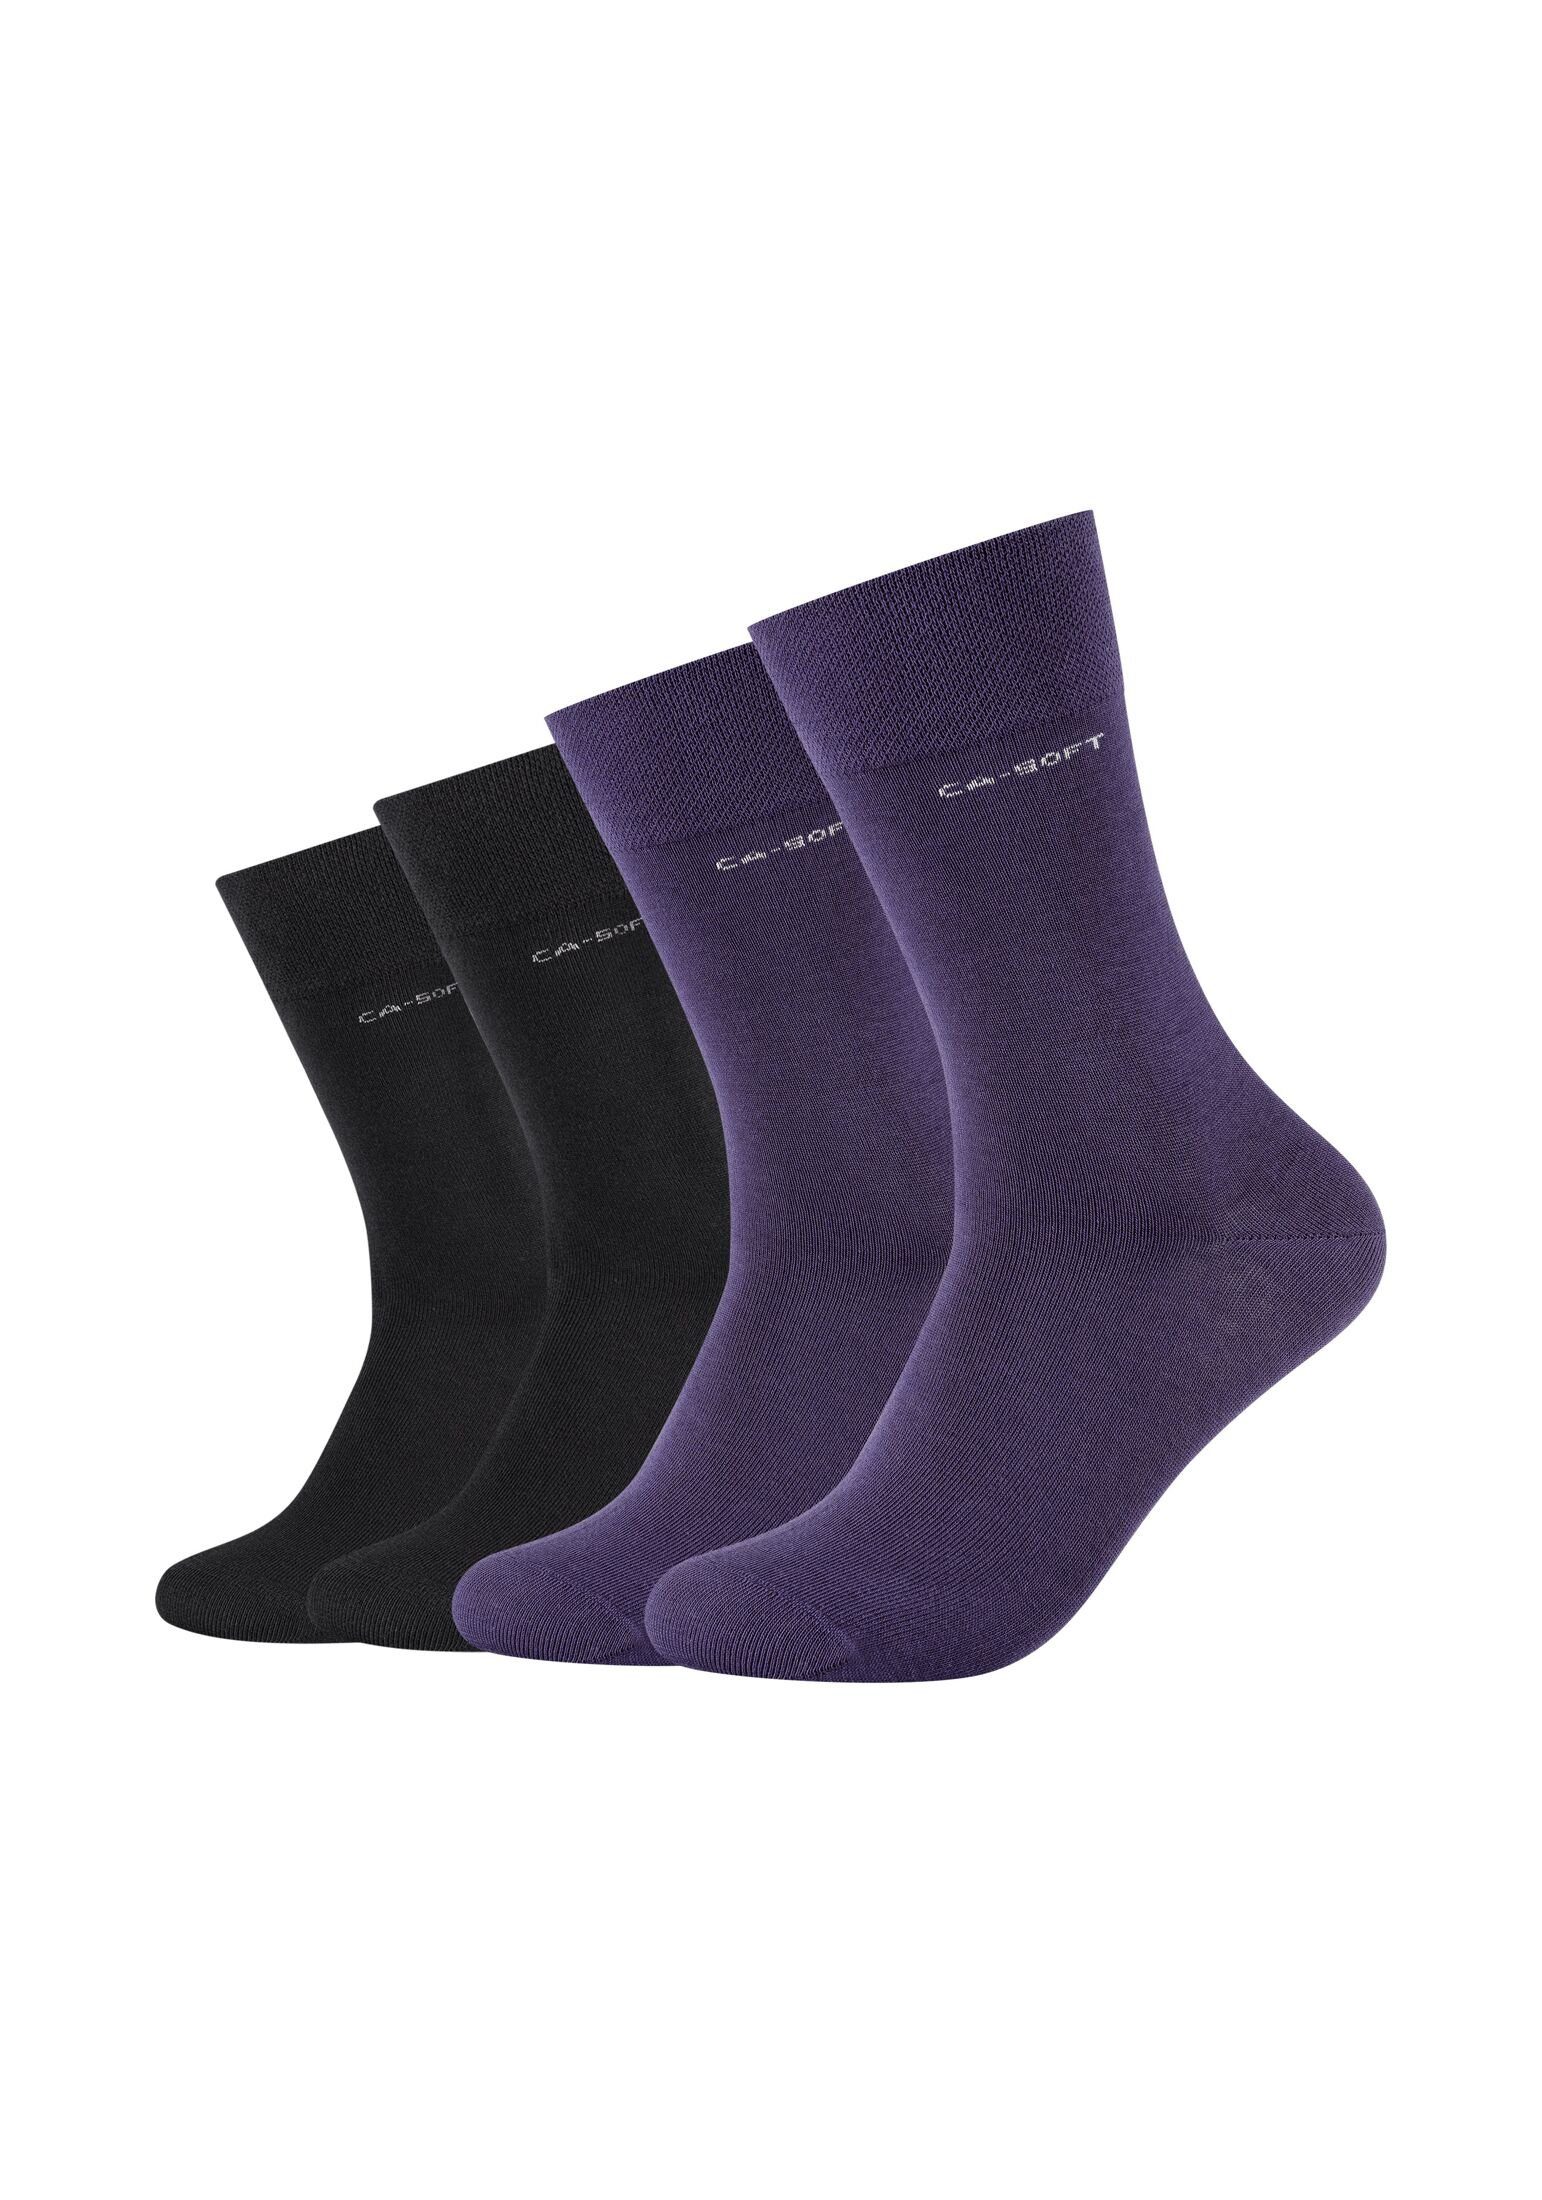 Camano Socken Socken für Damen und Herren Businesssocken Komfortbund Bequem